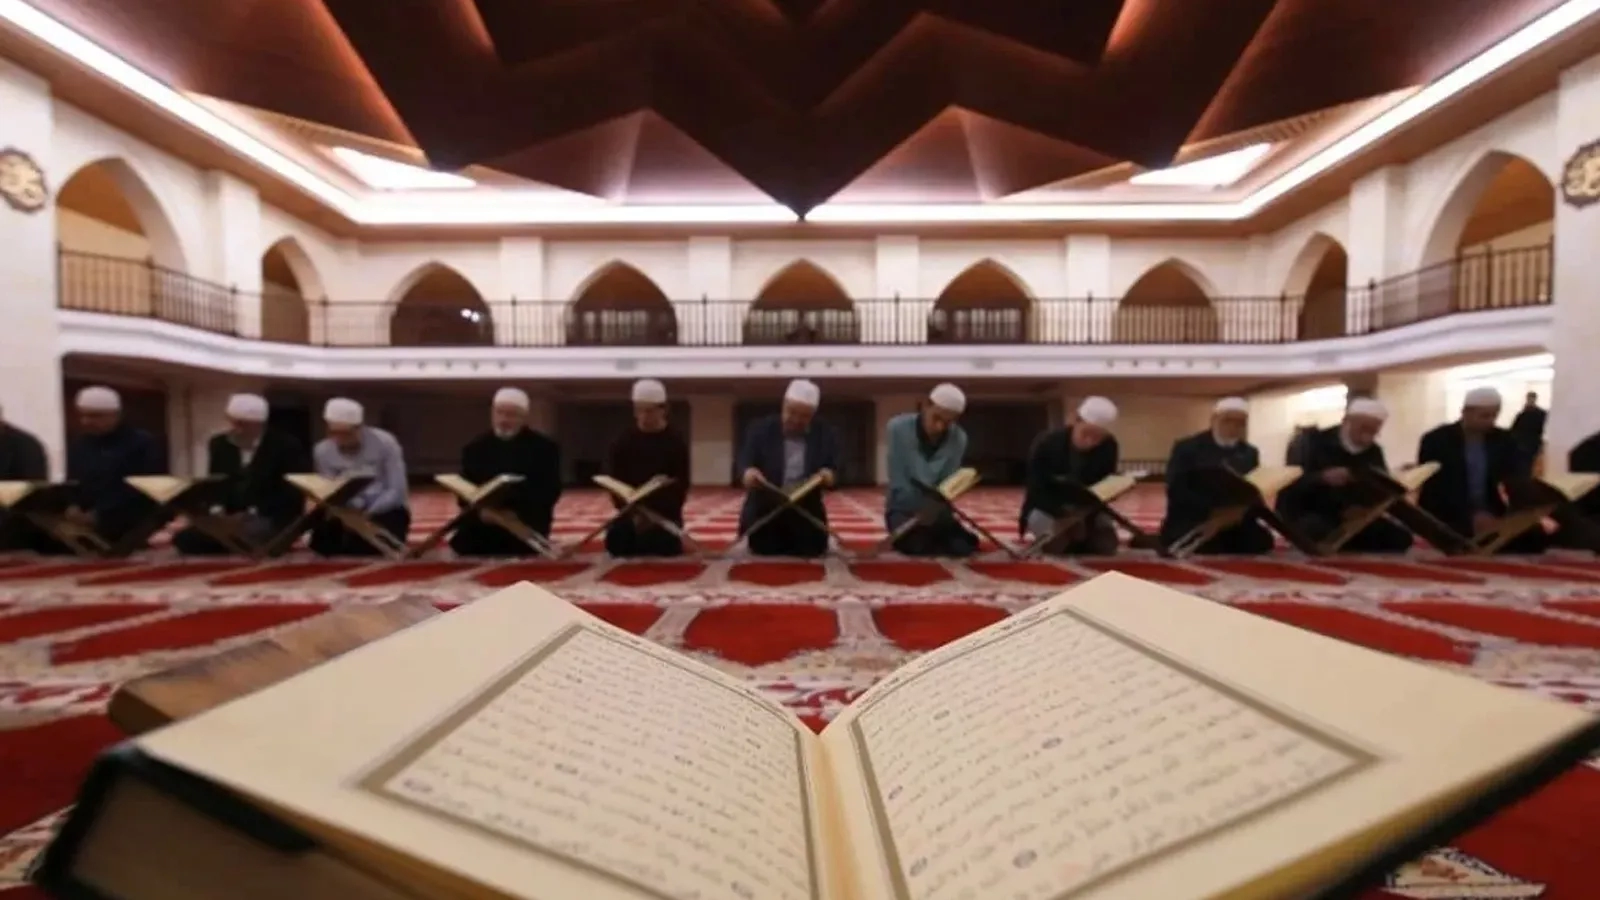 رمضان هو شهر القرآن لذا ترى الإقبال على تلاوته وختمه كبيراً في المساجد